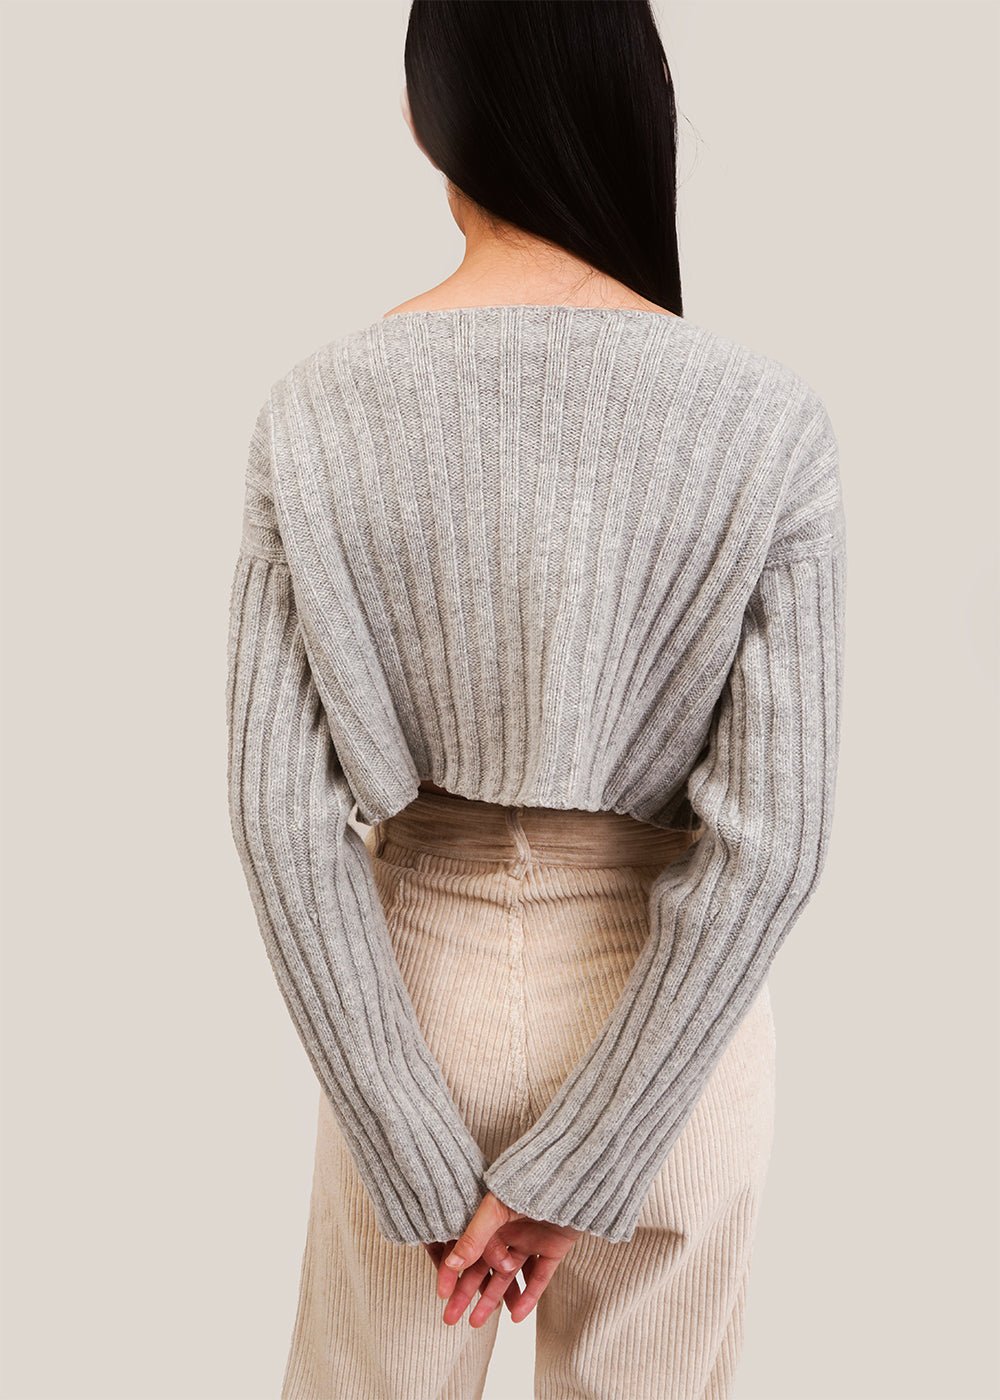 Baserange Grey Melange Macau Sweater - New Classics Studios Sustainable Ethical Fashion Canada